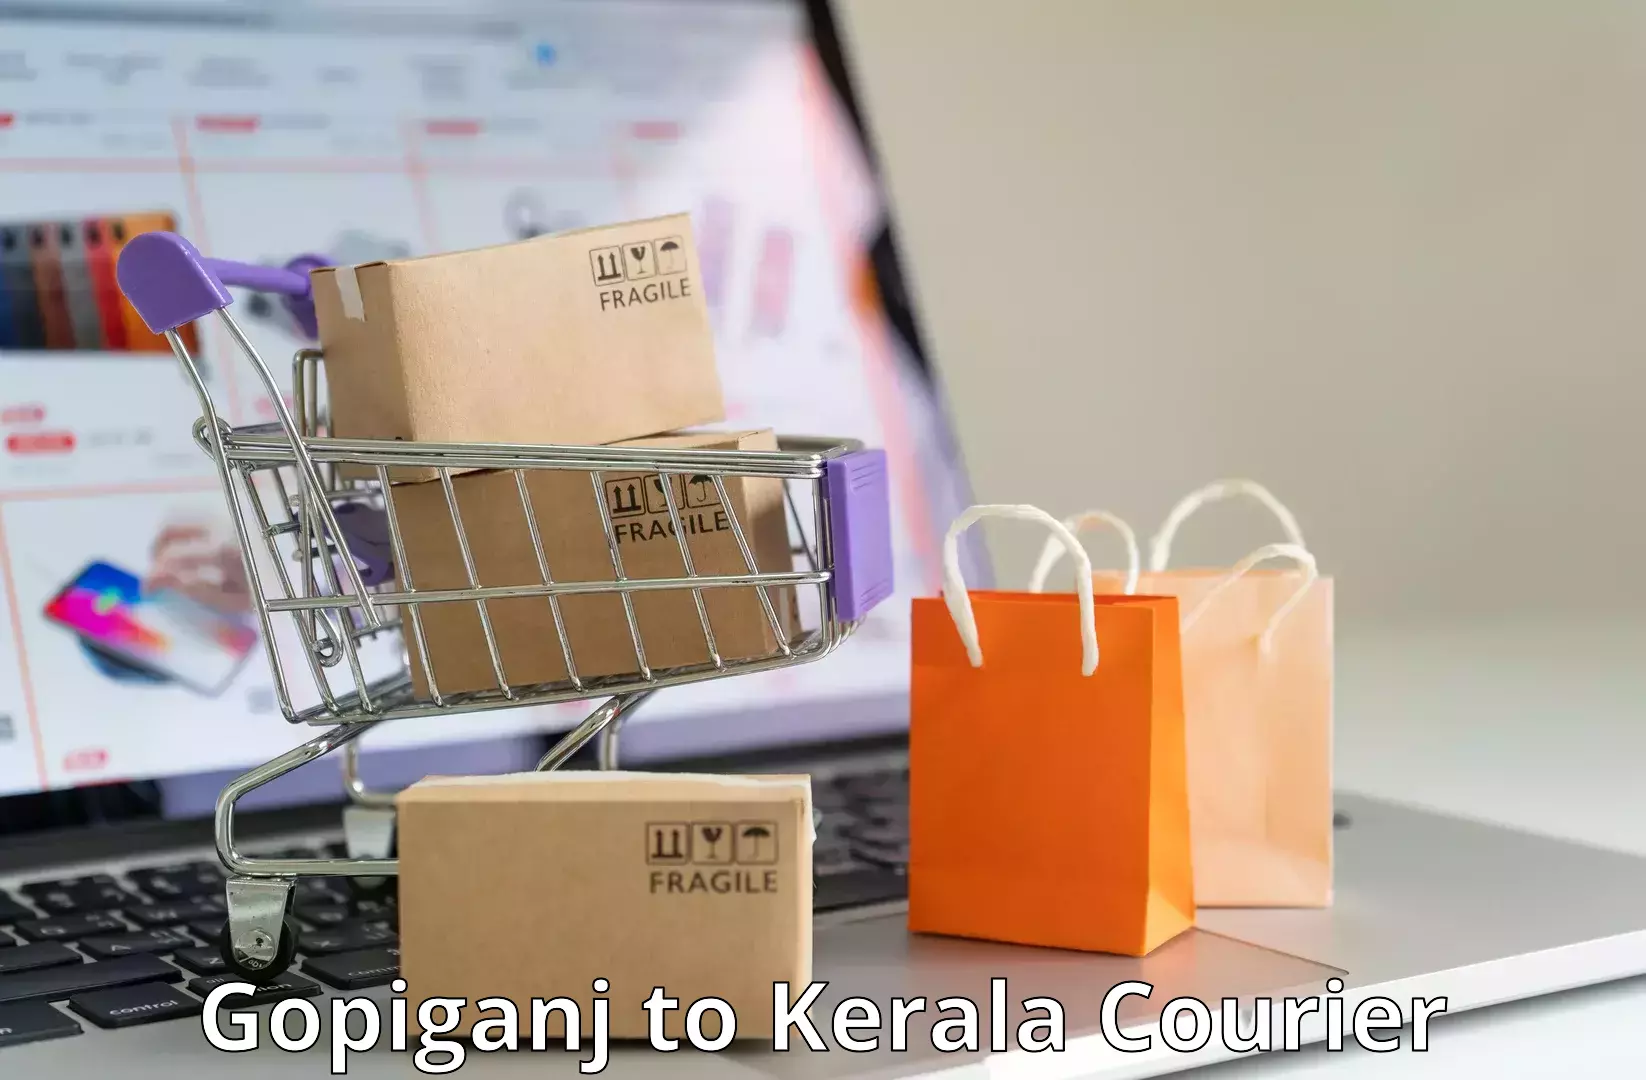 Cross-border shipping Gopiganj to Kerala